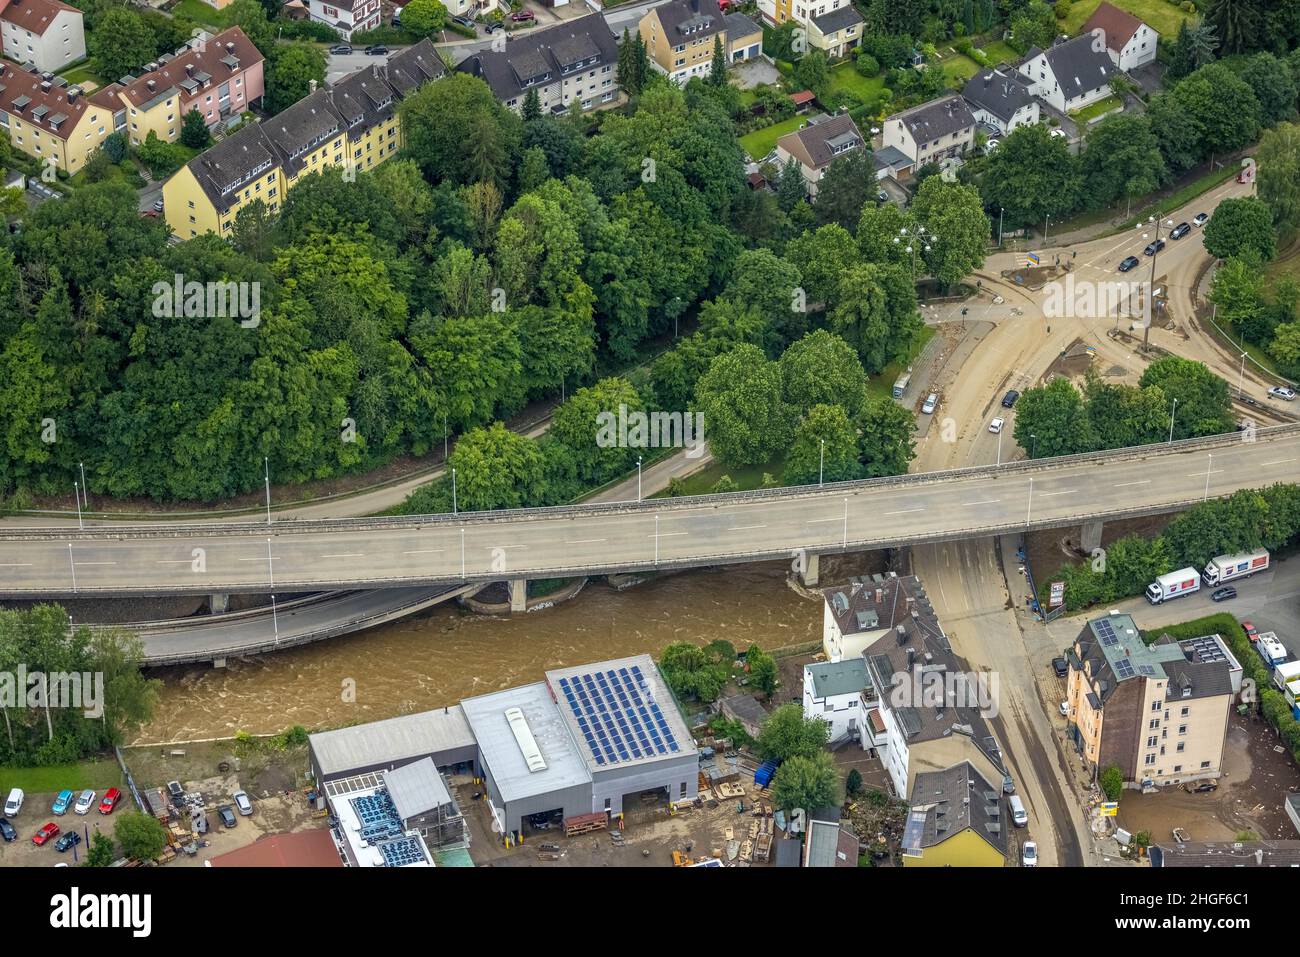 Foto aerea, alluvione Volme, alluvione, Eilpe, Hagen, Zona della Ruhr, Renania settentrionale-Vestfalia, Germania, Luftbild, Volmehochwasser, Überschwemmung, Emst, Hagen Foto Stock